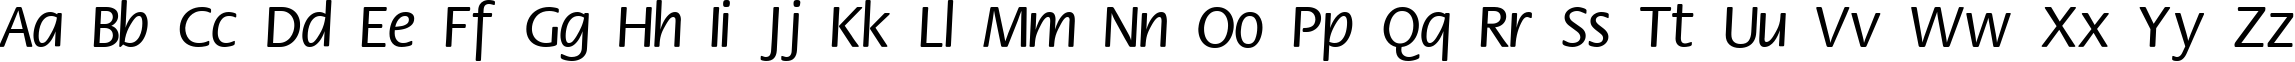 Пример написания английского алфавита шрифтом Flower Normal